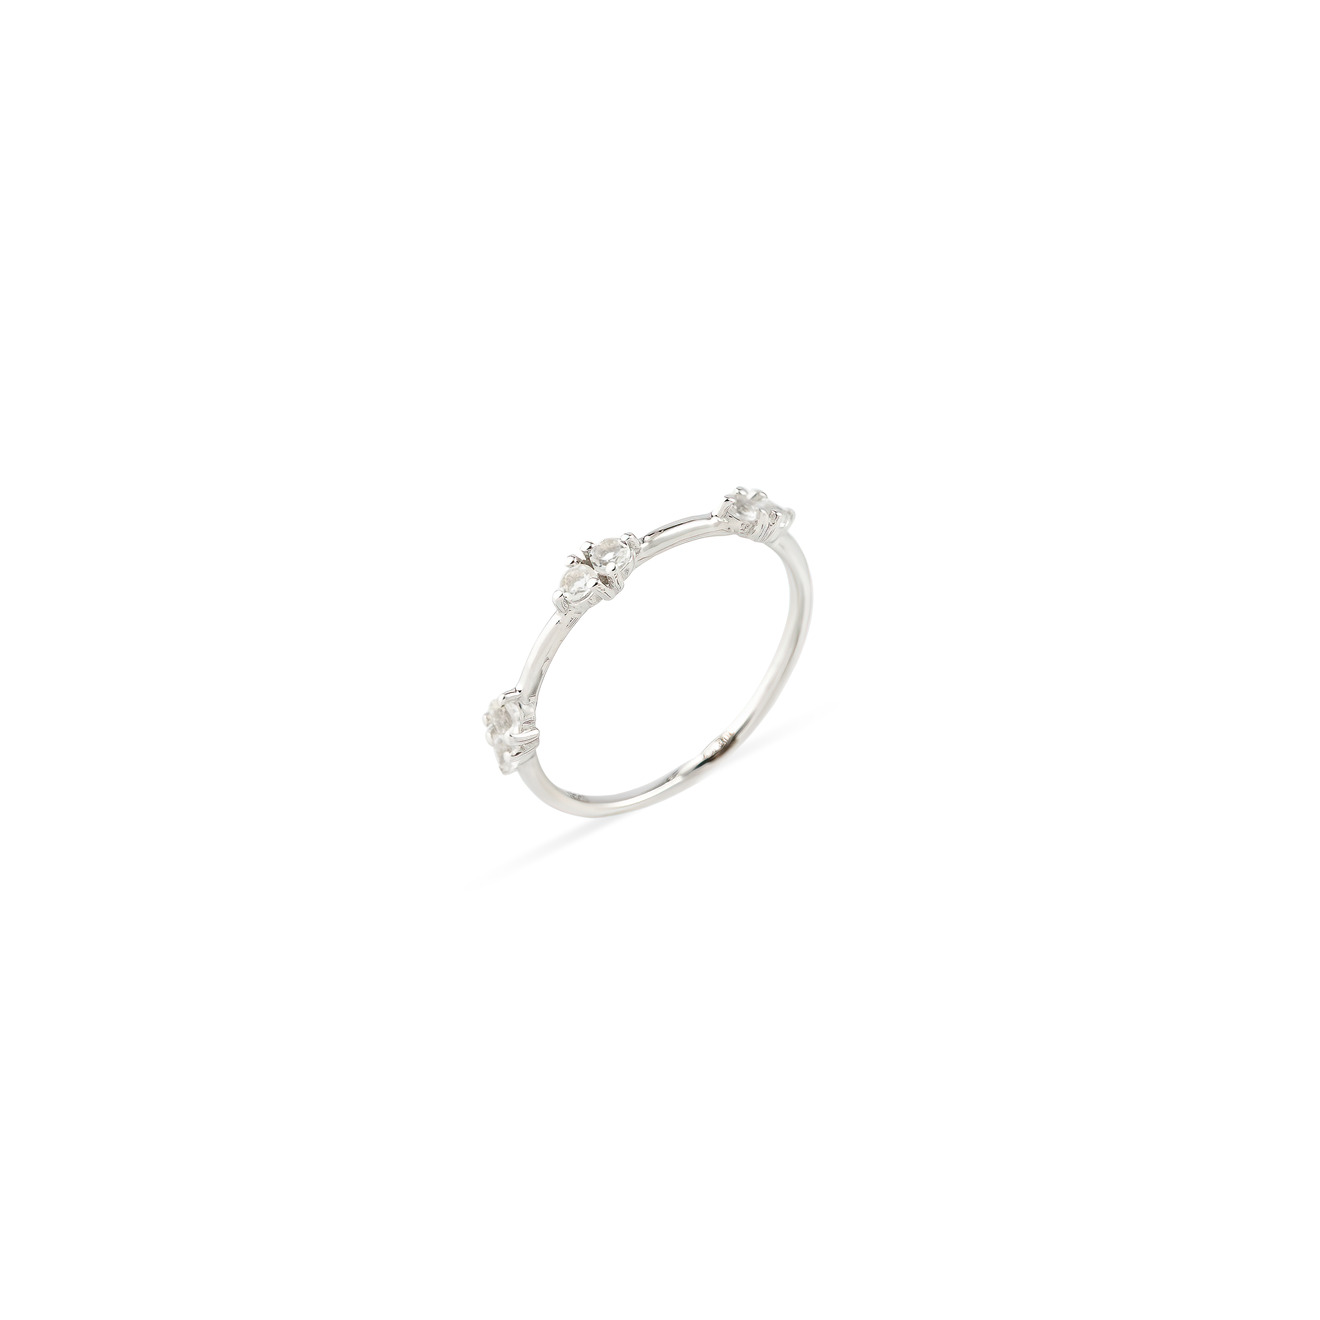 Wisteria Gems Серебряное кольцо тонкое со вставками из круглого горного хрусталя wisteria gems серебряное кольцо с двумя квадратными камнями розового кварца и граната